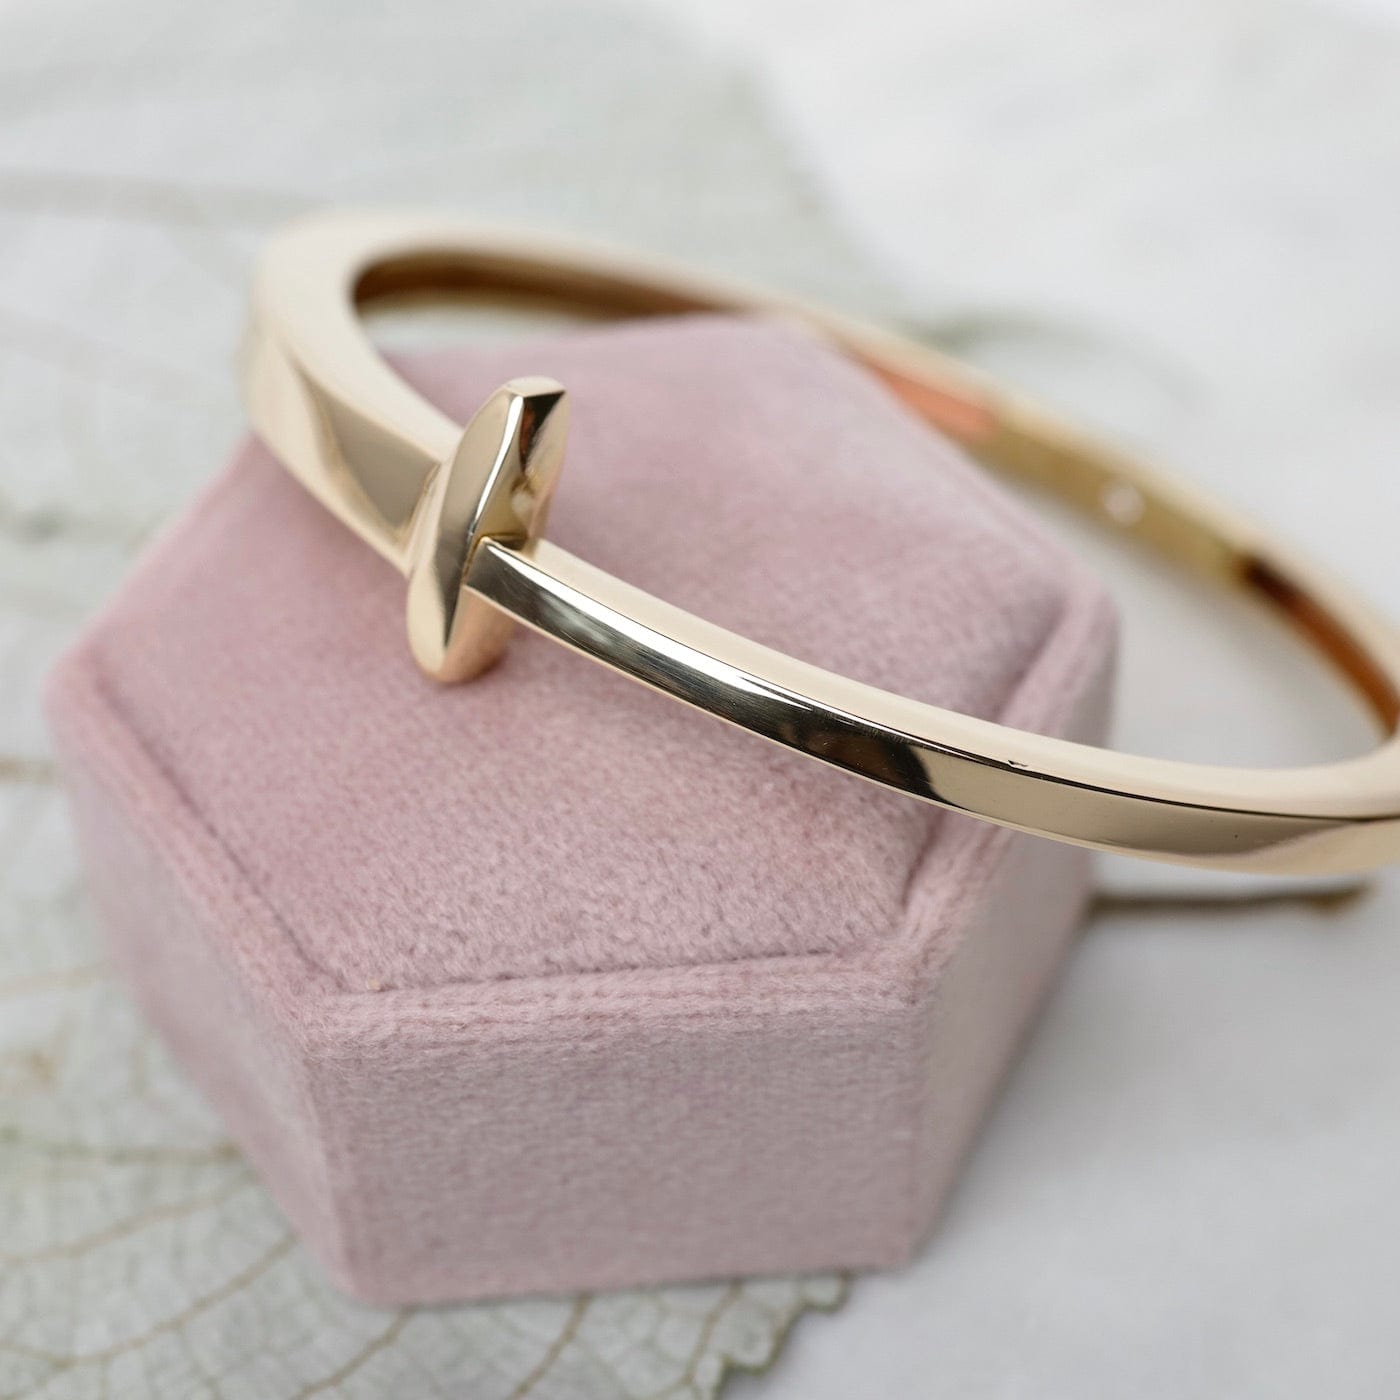 Buy The Bling Box Charming Diamond Nail Bracelet Bracelets For Women &  Girls. at Amazon.in